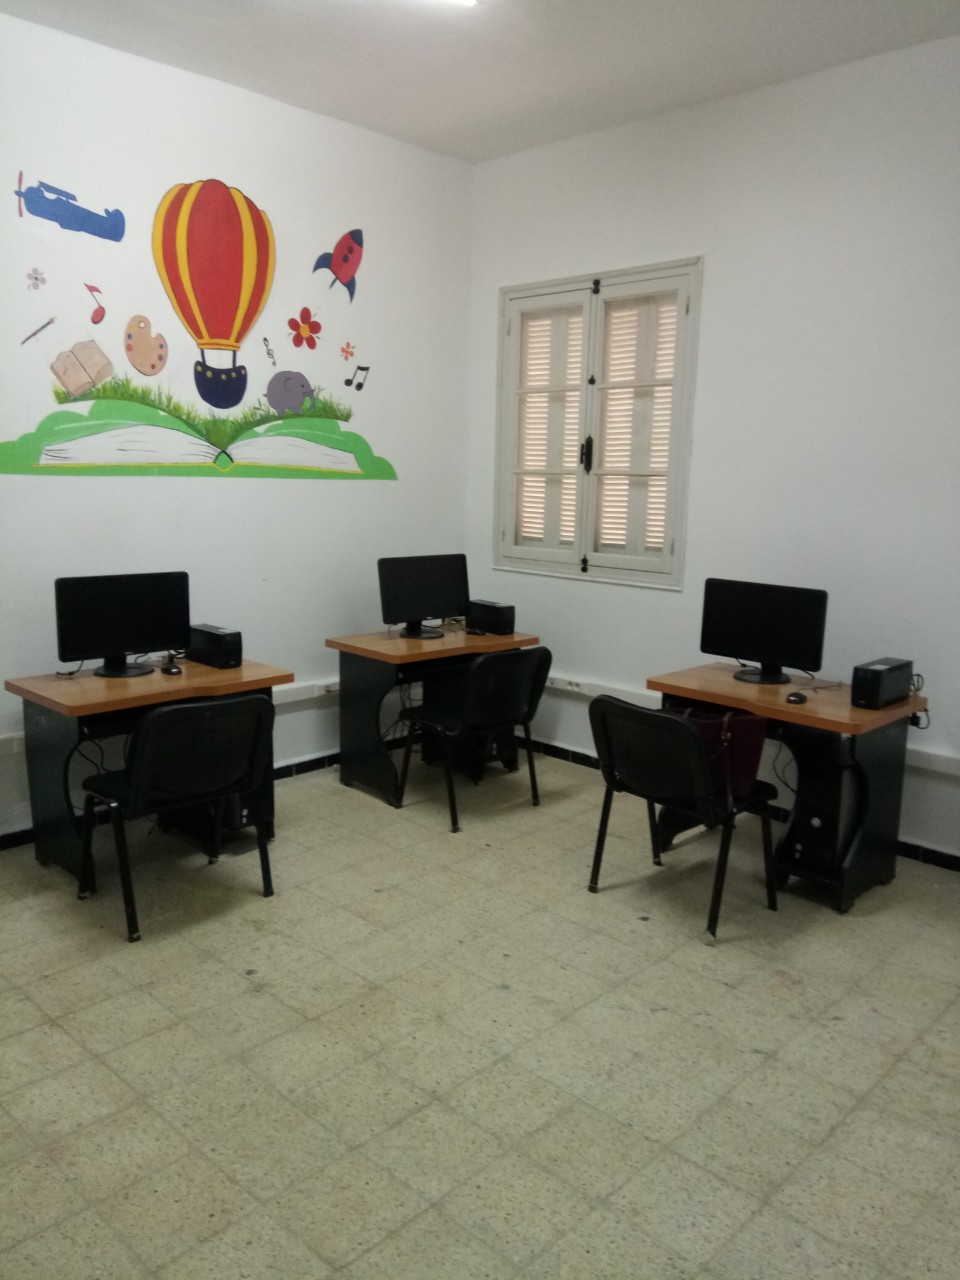 Une bibliothèque et l’installation d’un réseau informatique au village Ighil Bougueni, un projet fédérateur.